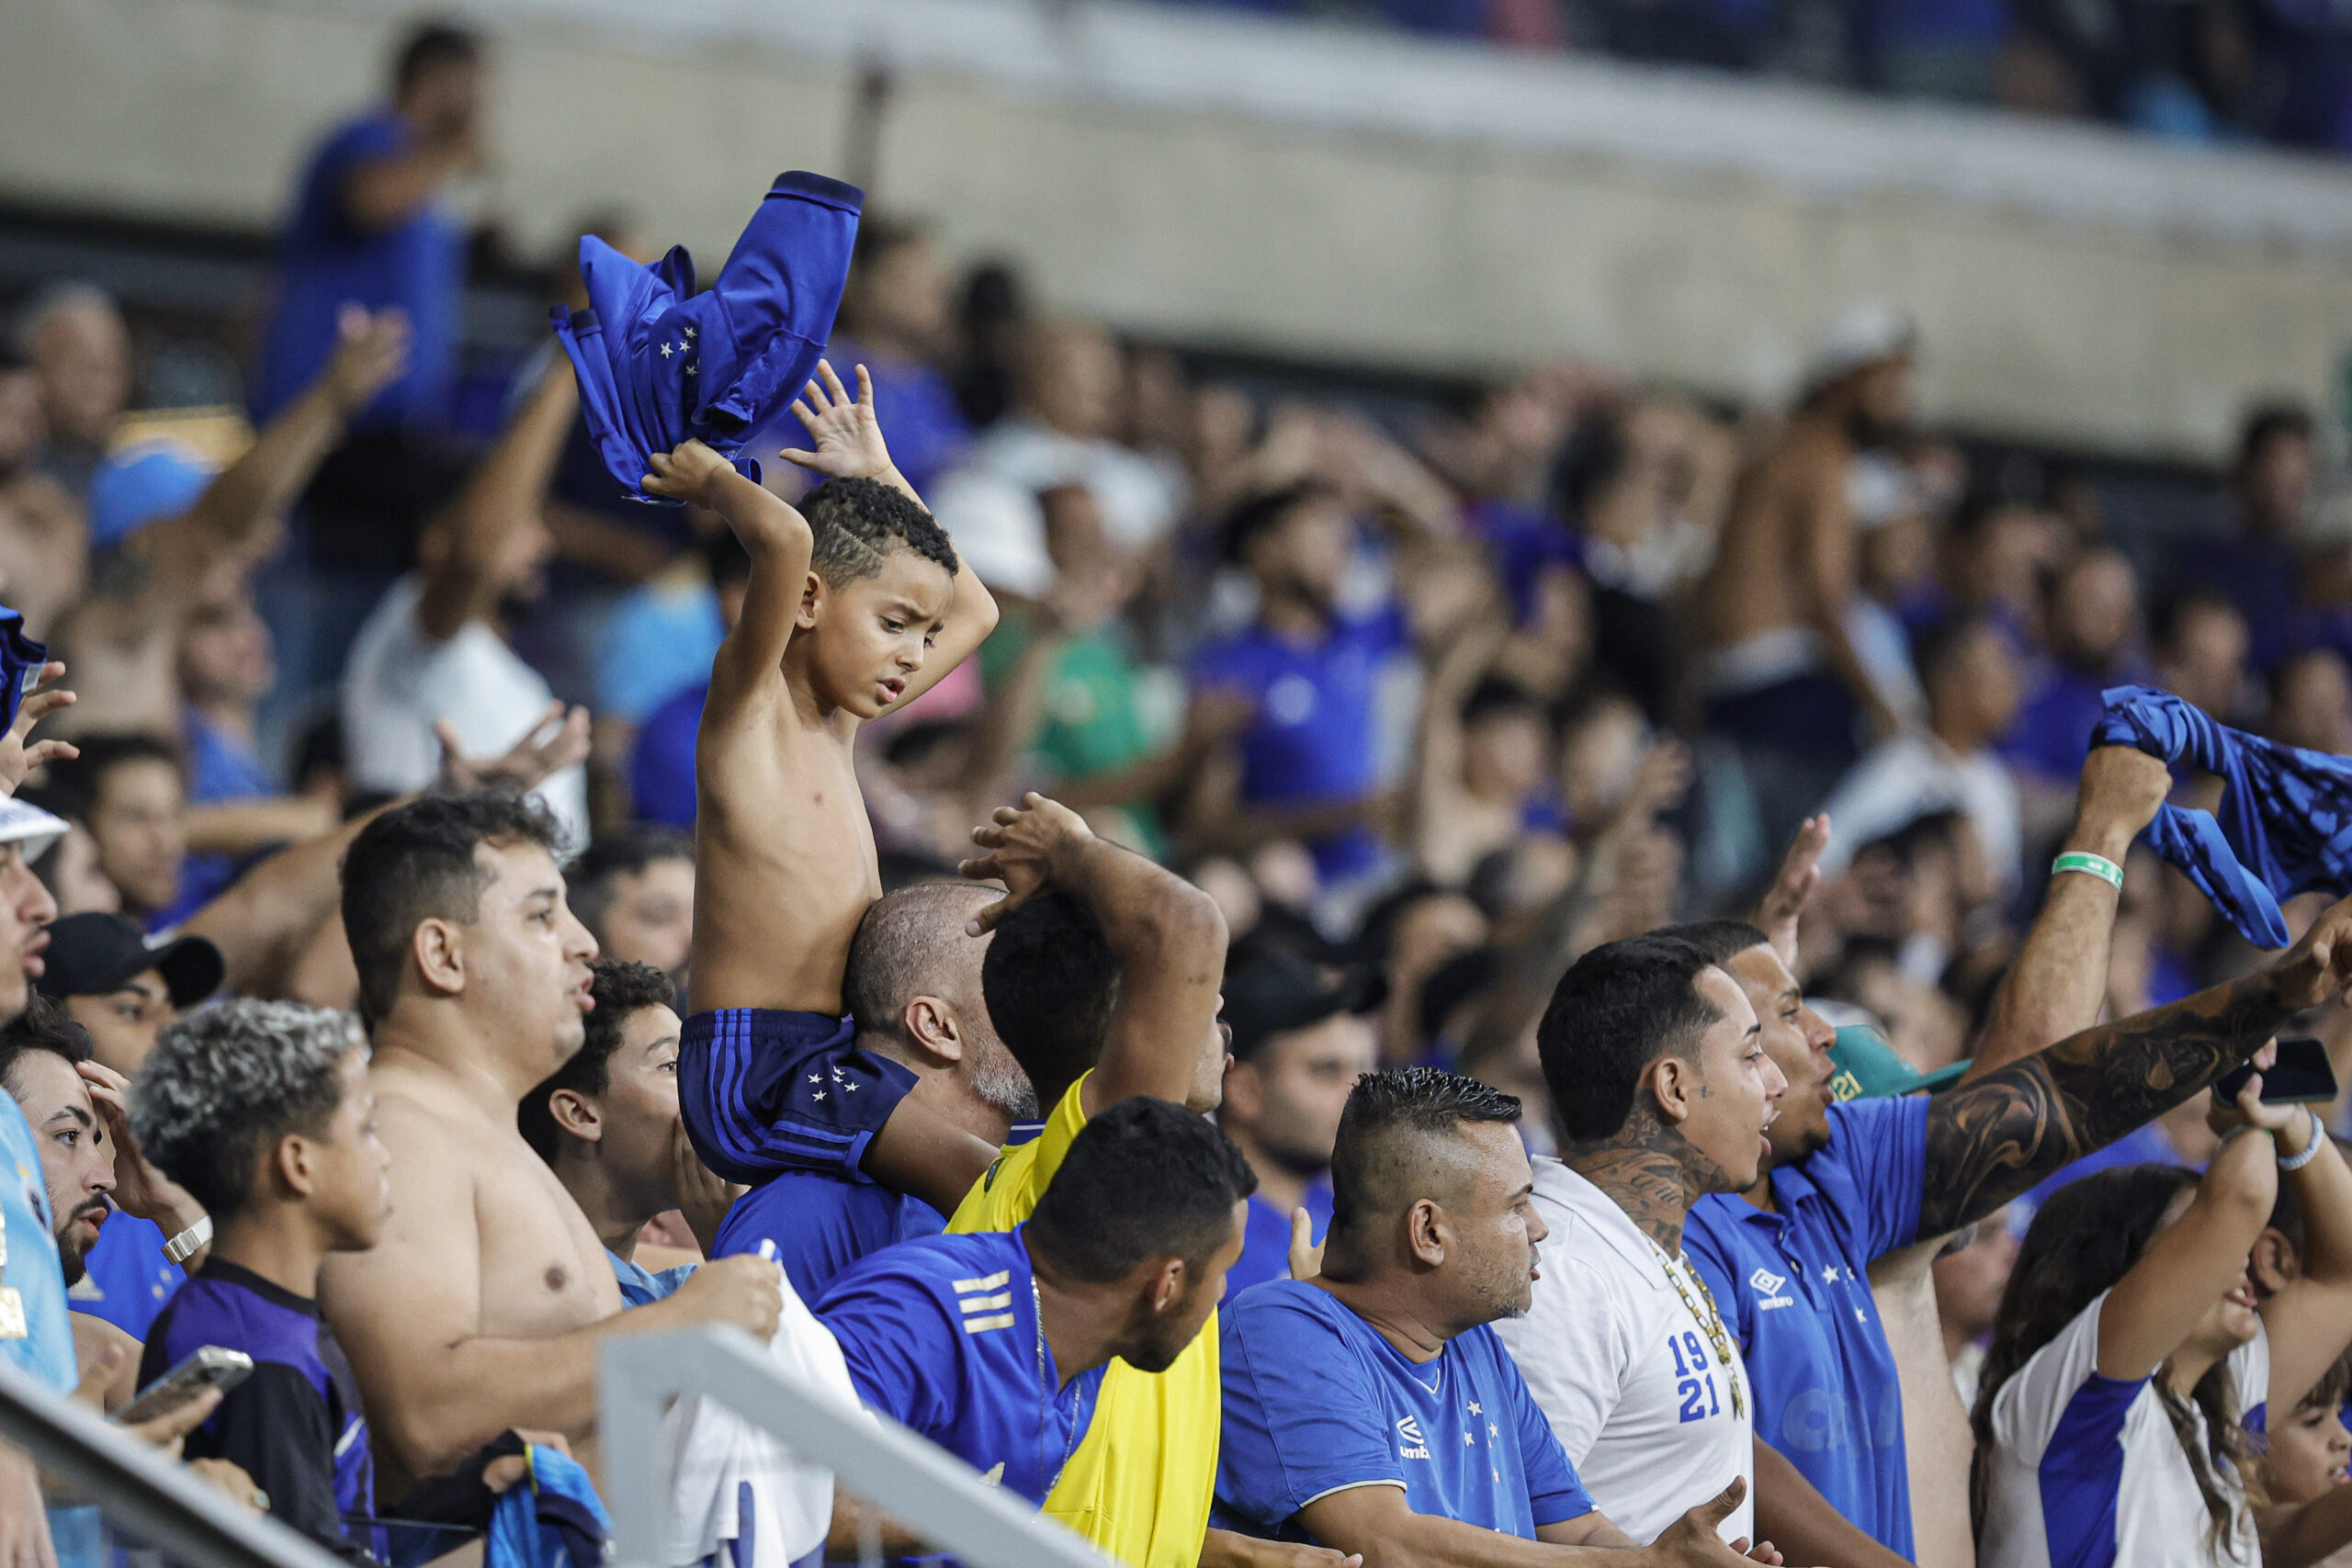 Torcedor do Cruzeiro poderá marcar presença na próxima quarta (4). Foto: Staff Imagens / Cruzeiro / Flickr